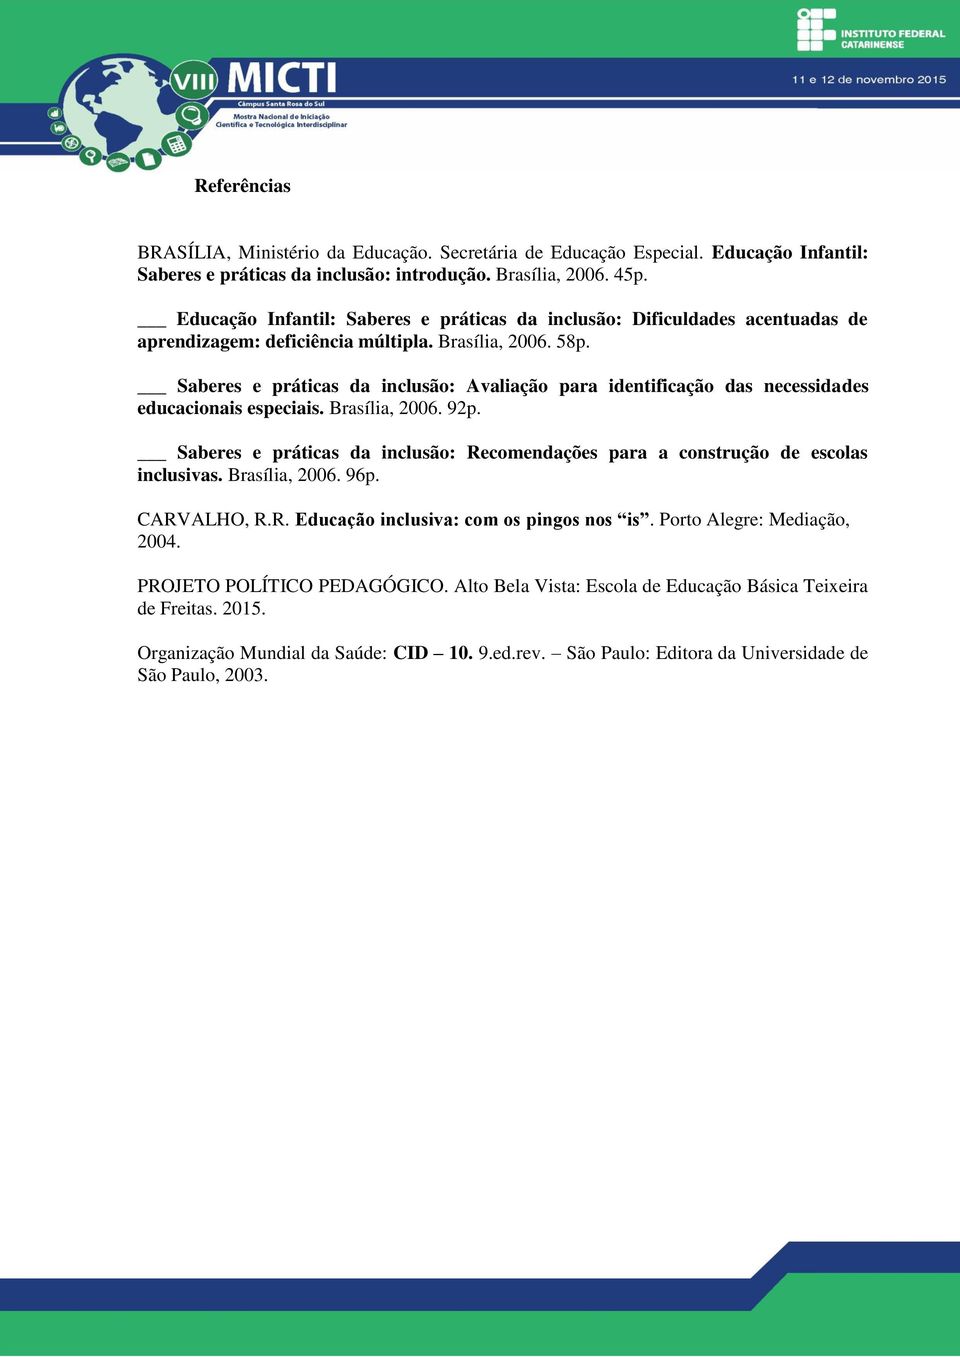 Saberes e práticas da inclusão: Avaliação para identificação das necessidades educacionais especiais. Brasília, 2006. 92p.